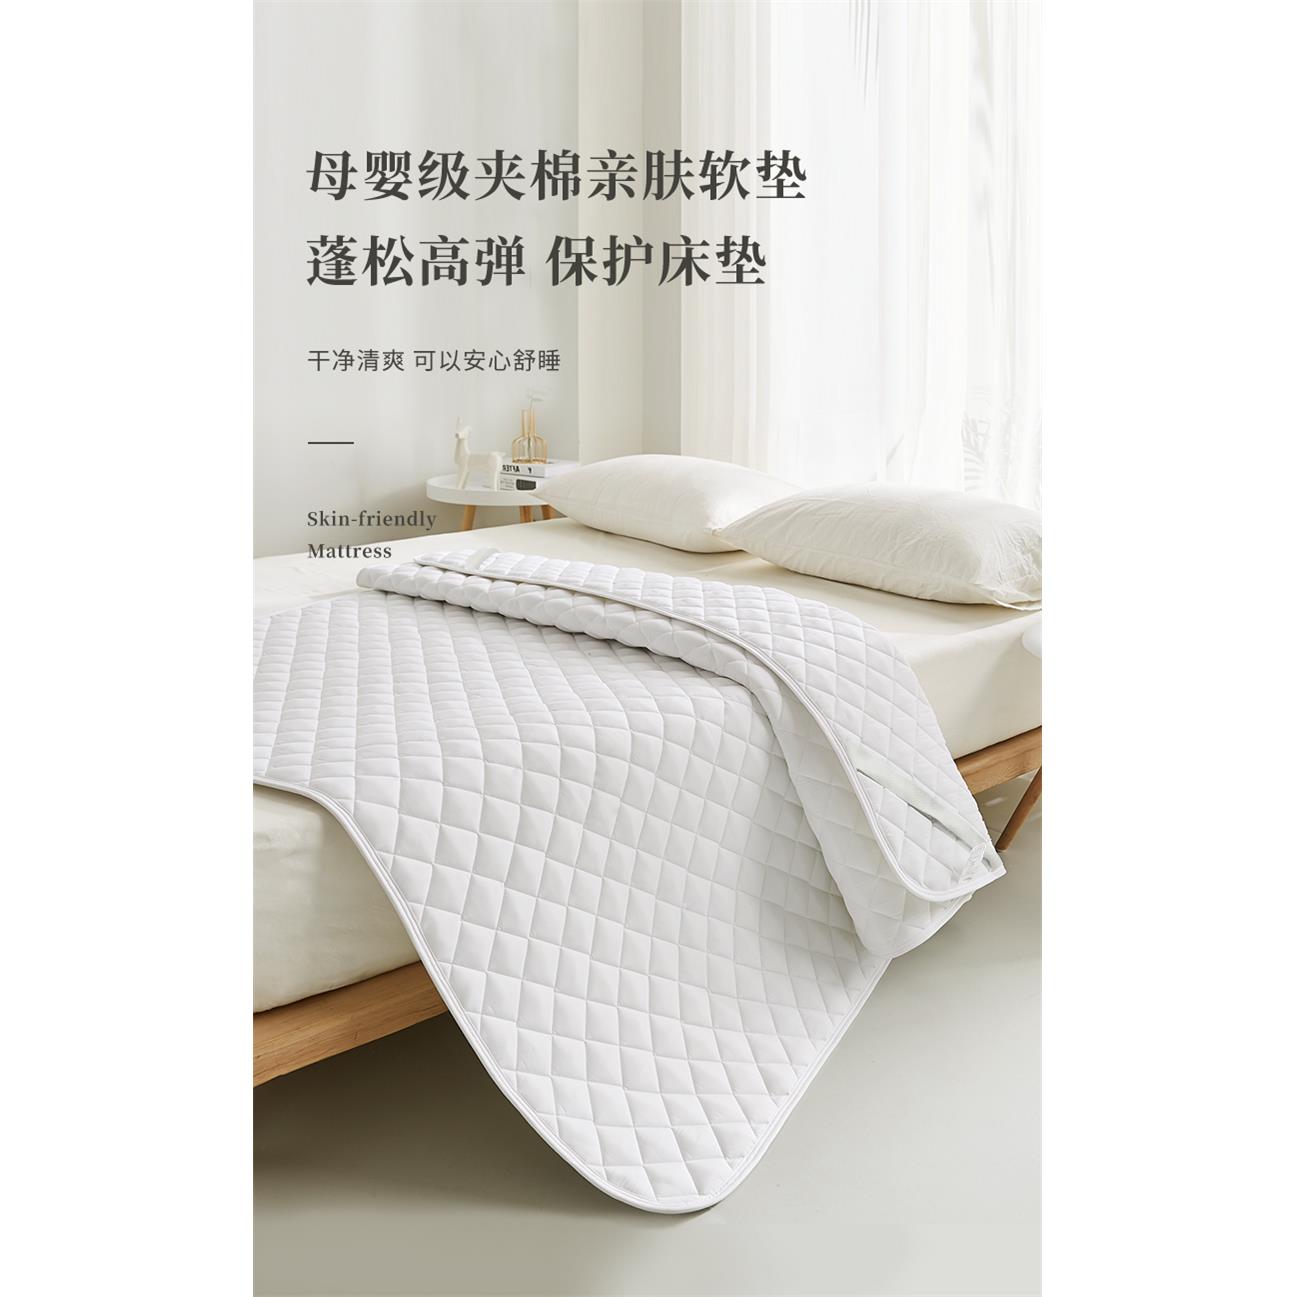 双人褥垫铺床上用180x200床垫双人家用垫子可机洗席梦思保护垫